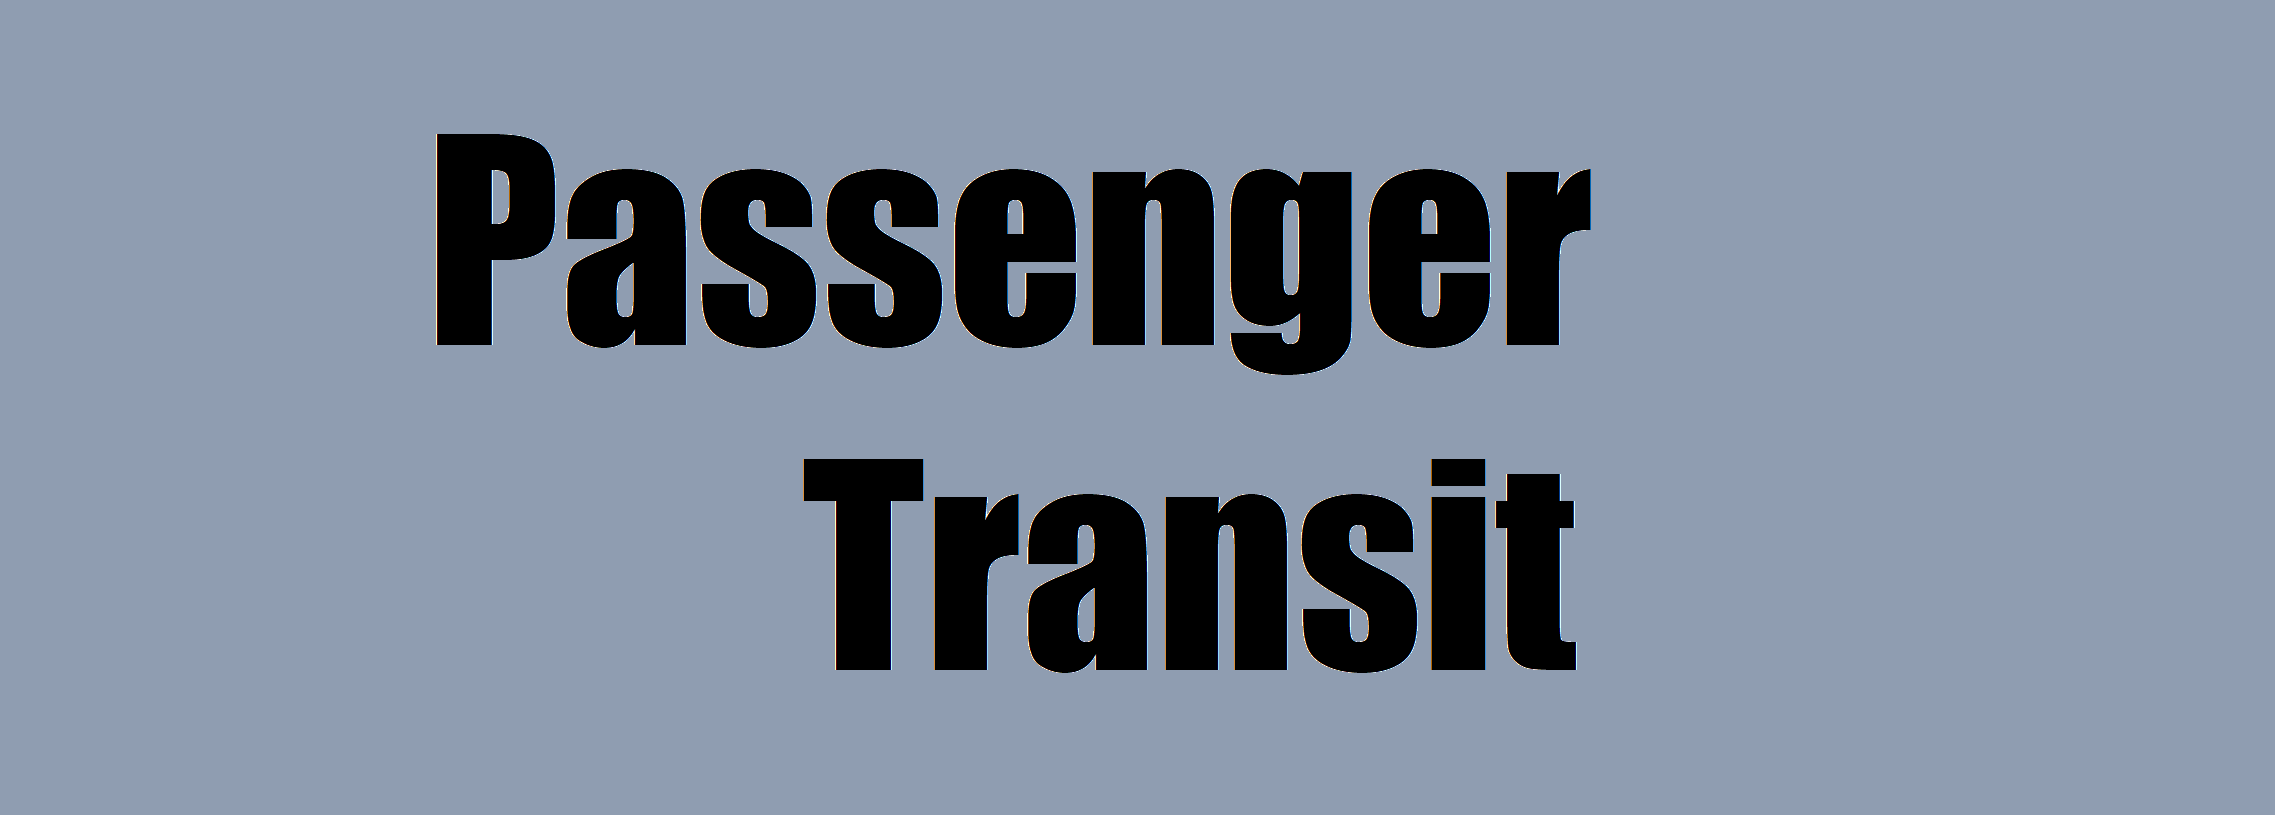 Passenger Transit